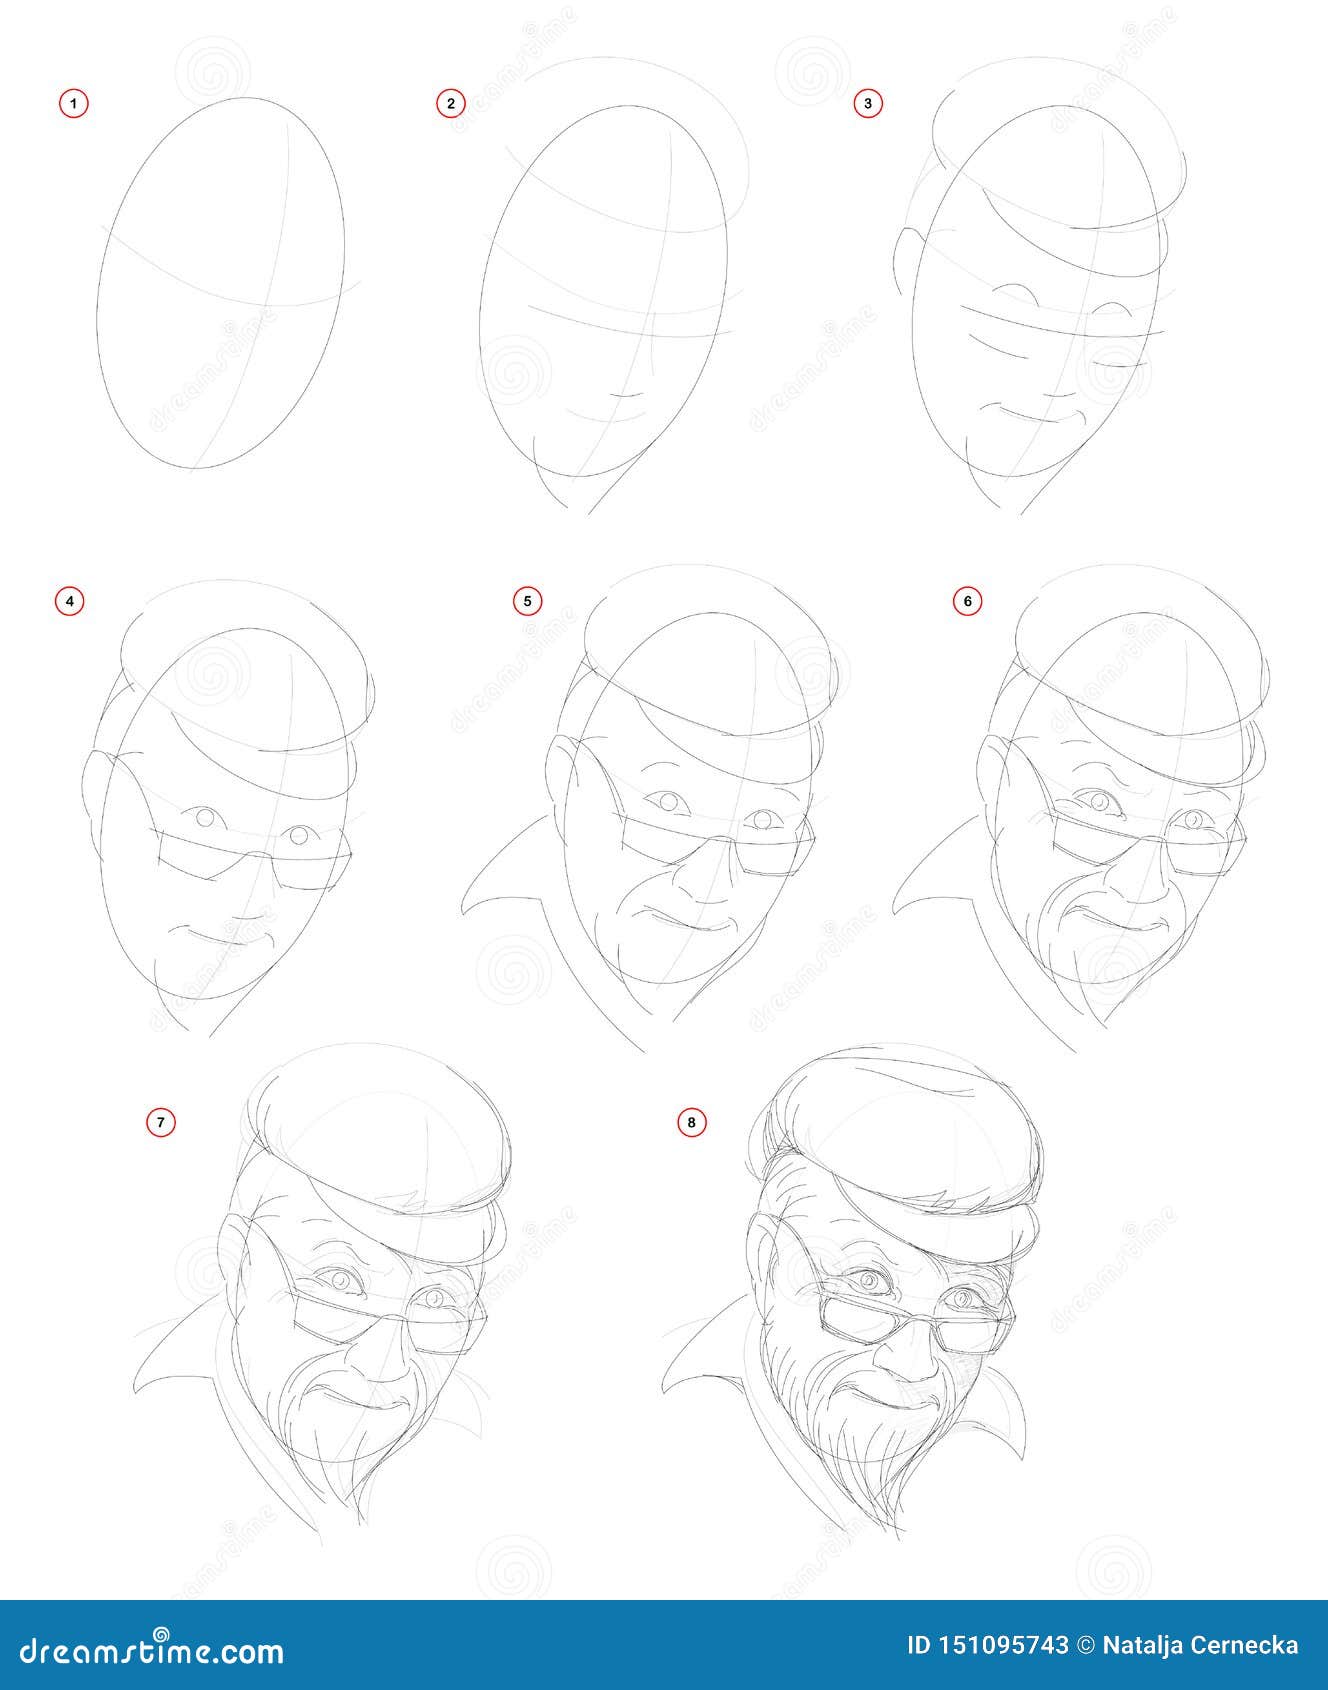 Como desenhar uma pessoa fácil passo a passo / how to draw an easy person 